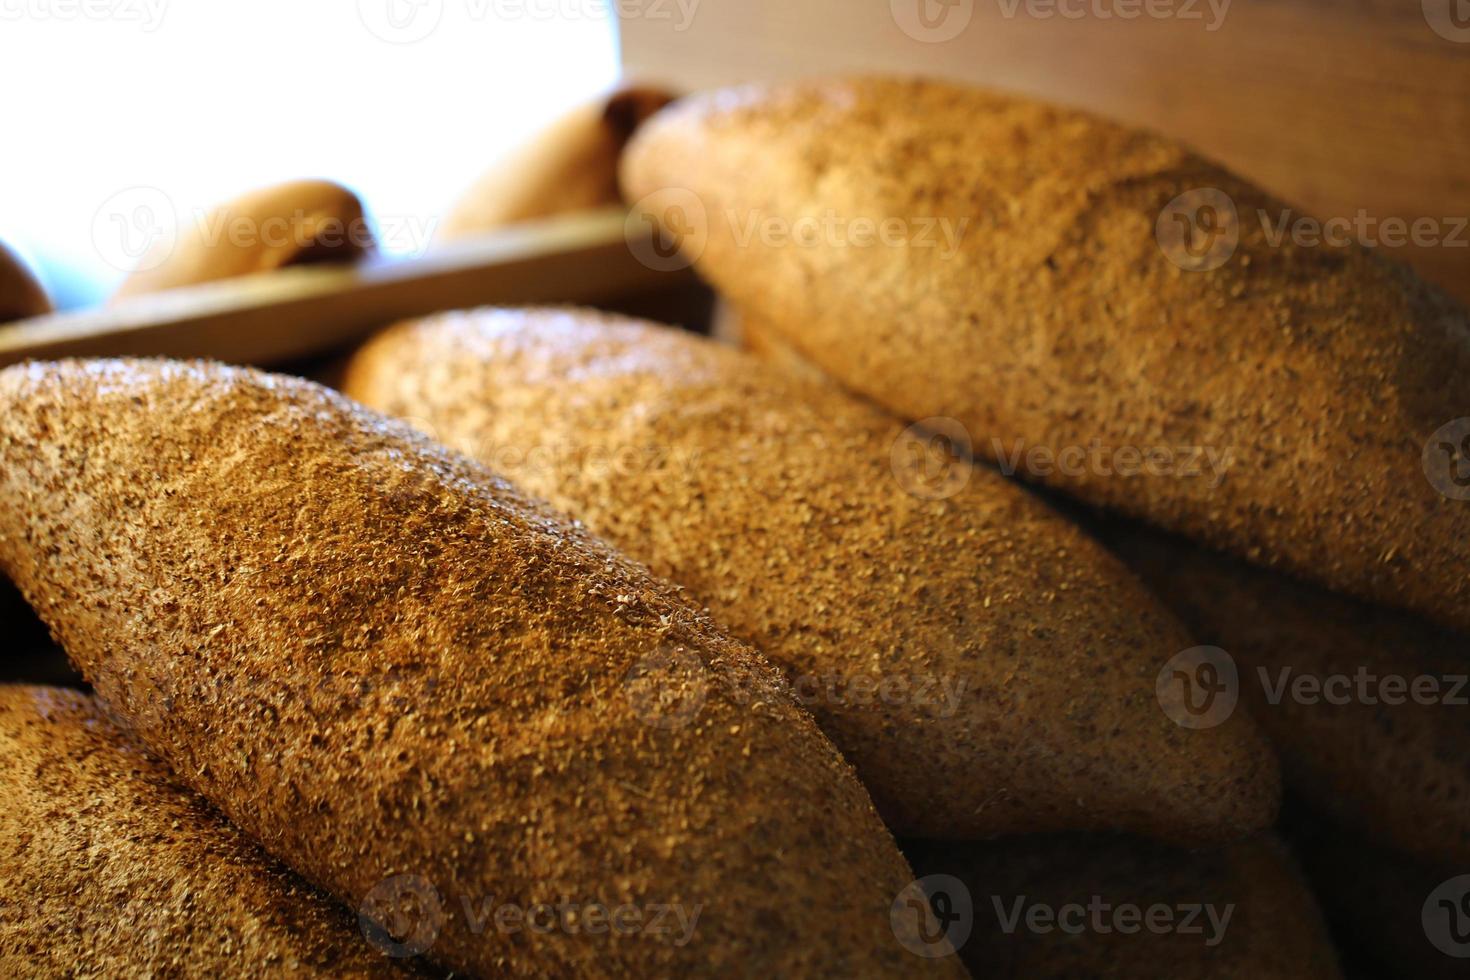 zemelenbrood, bakkerijproducten, bakkerij en bakkerij foto